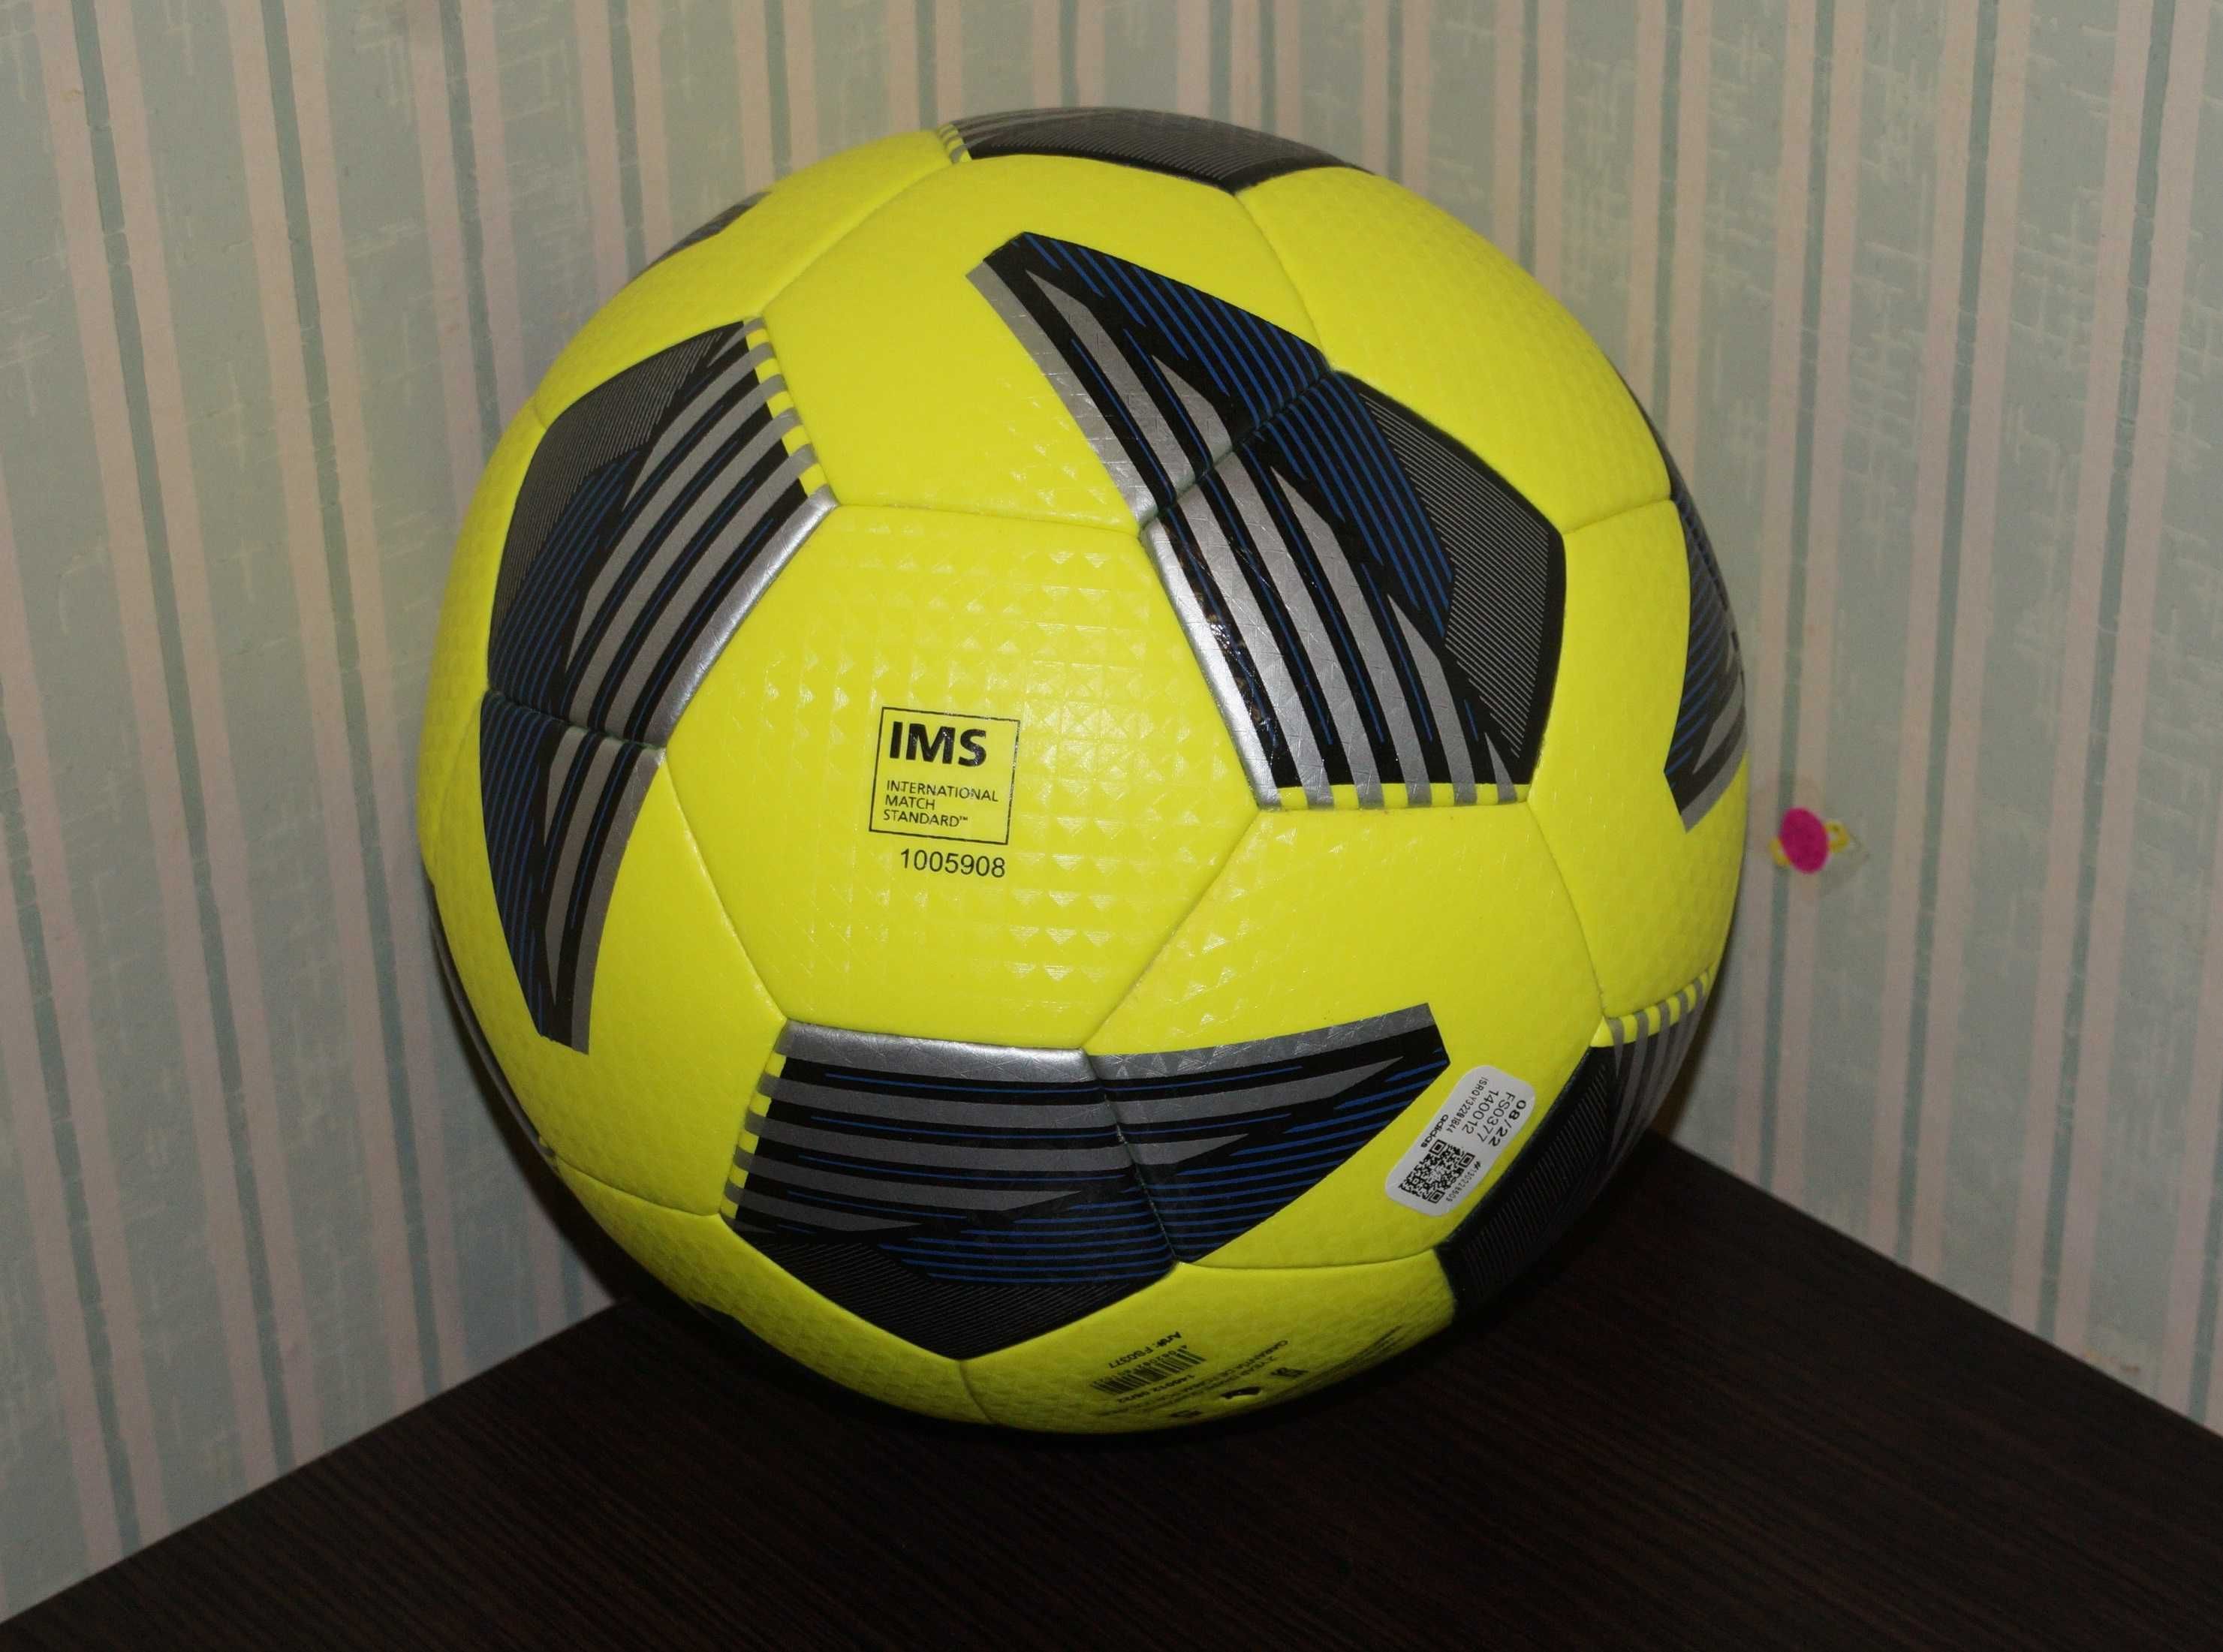 Мяч футбольный Adidas Tiro League TB FS0377 размер 5